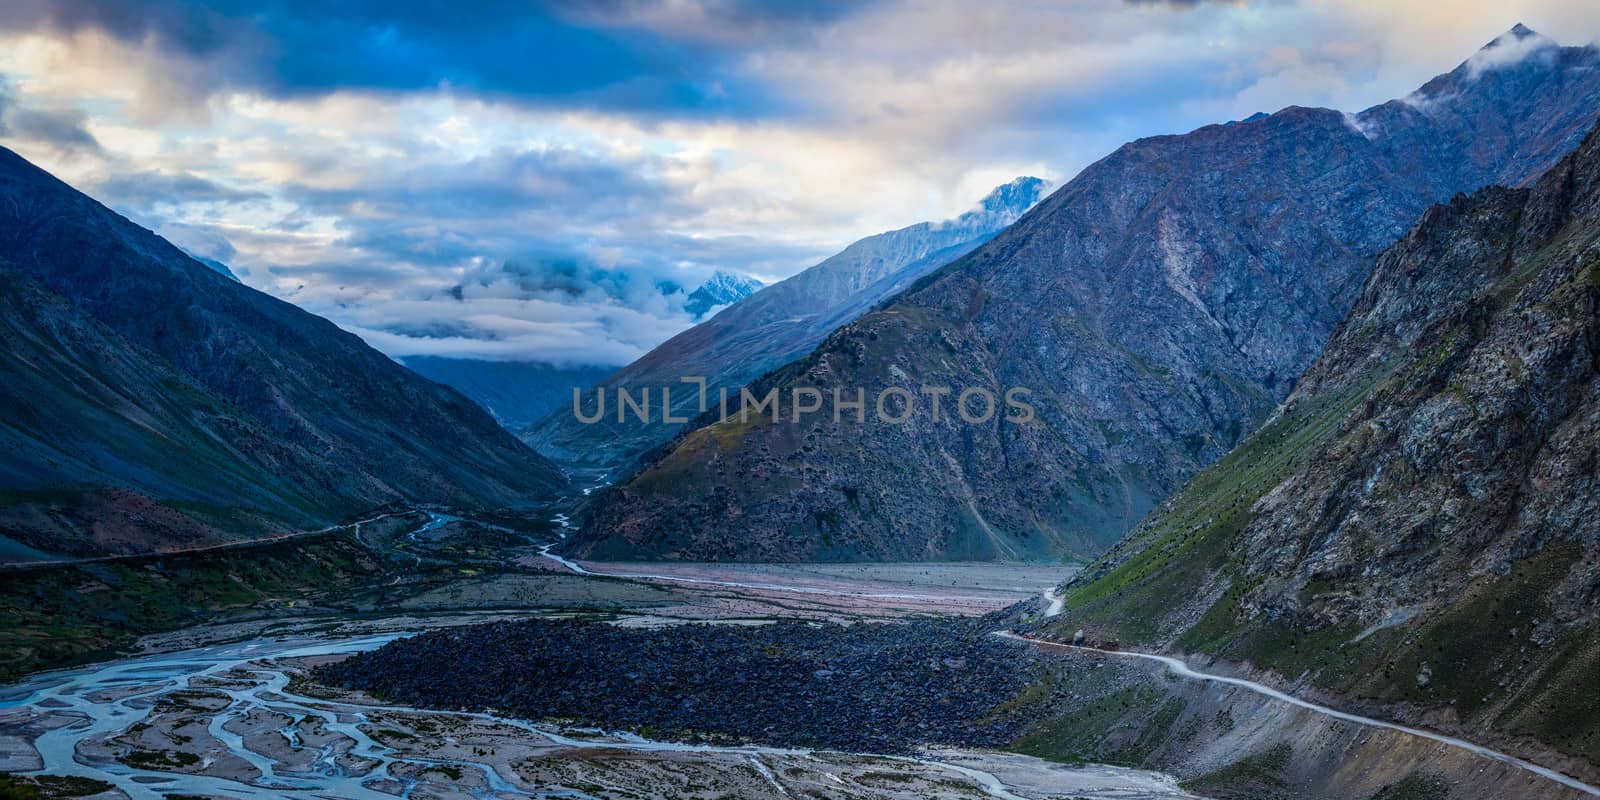 Manali-Leh road in Lahaul valley. Himachal Pradesh, India